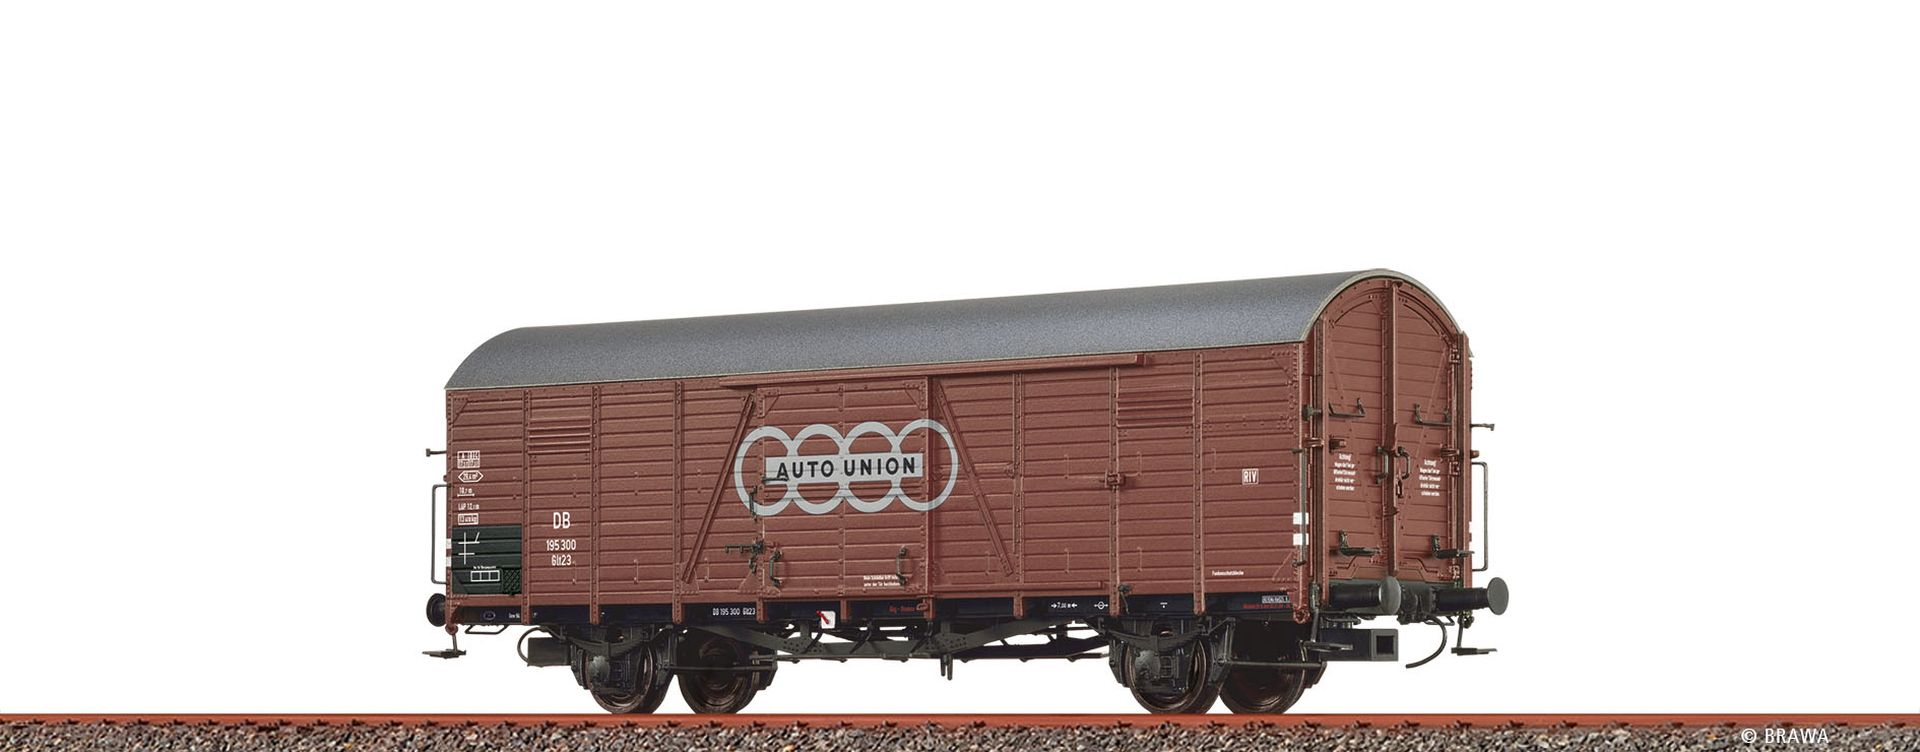 Brawa 50484 - Gedeckter Güterwagen Glr 23 'Auto Union', DB, Ep.III